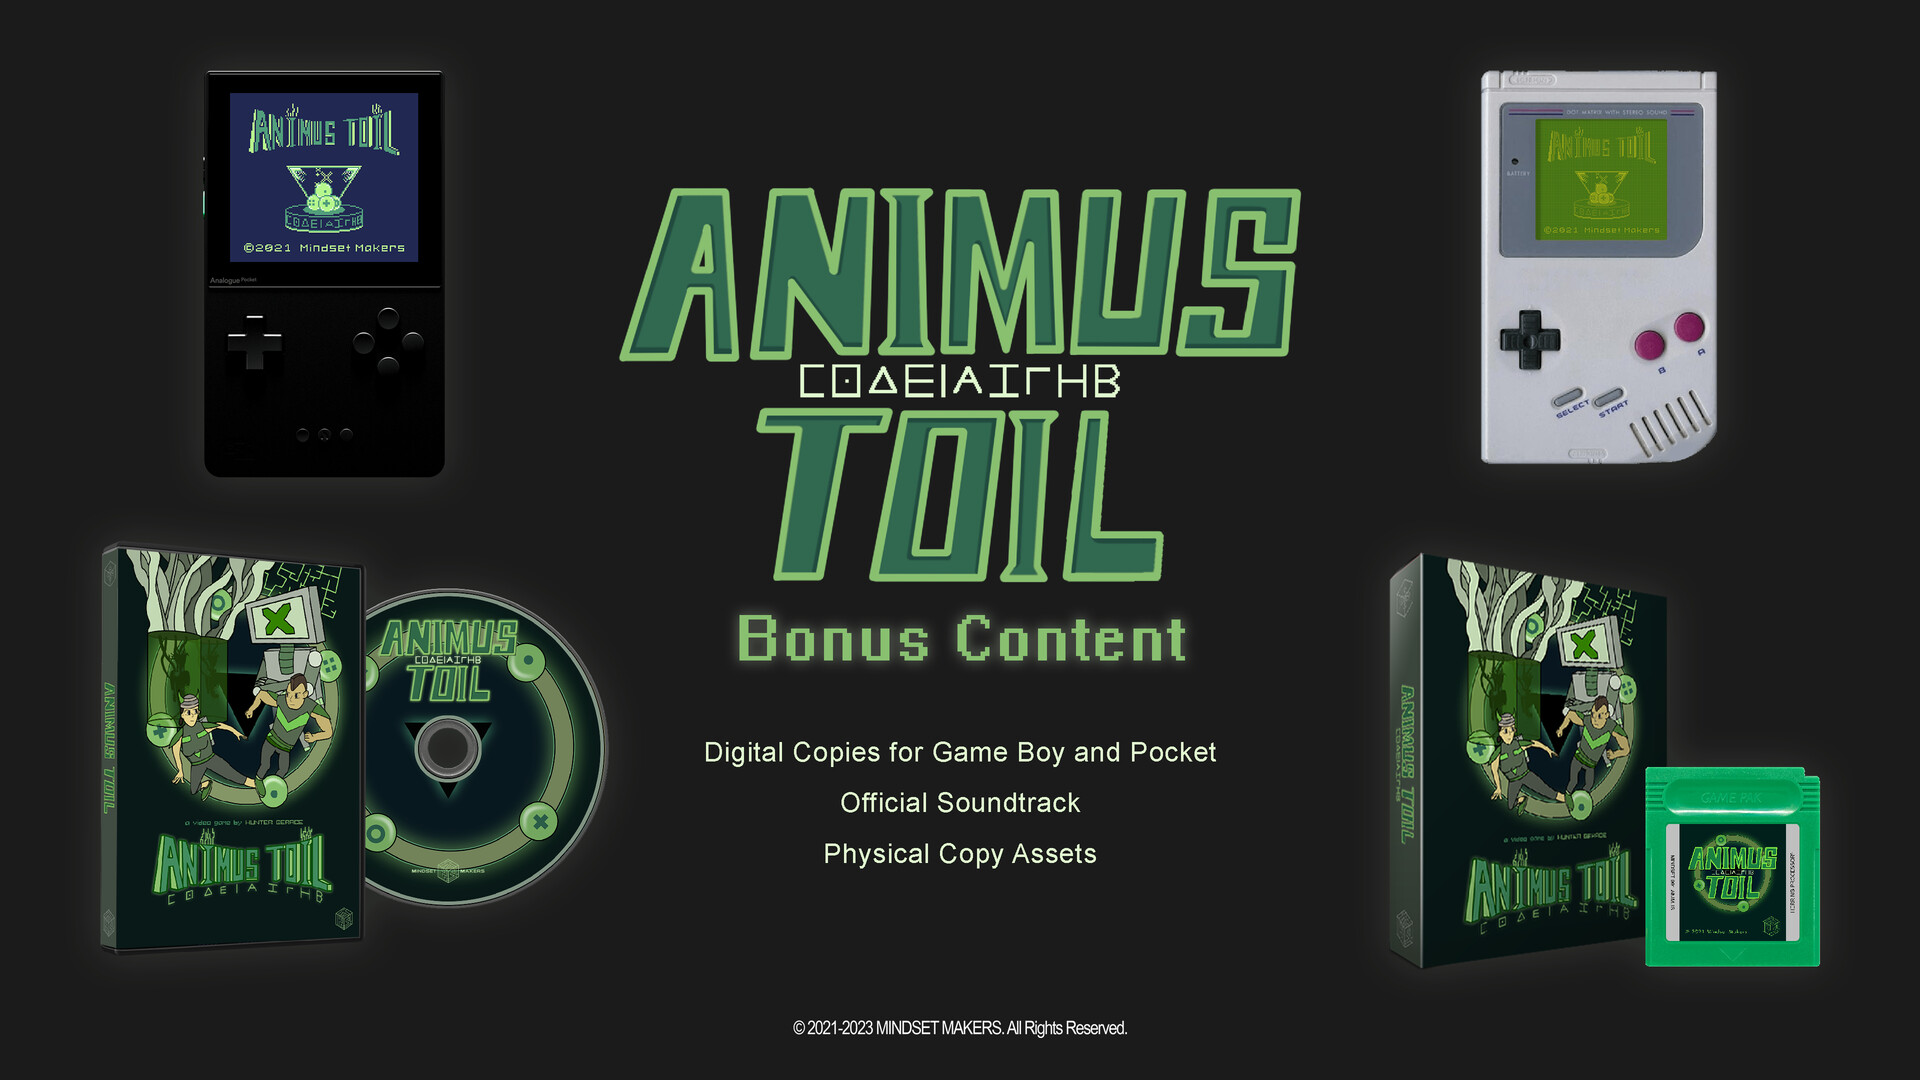 Animus Toil - Bonus Content ($10 Donation) Featured Screenshot #1